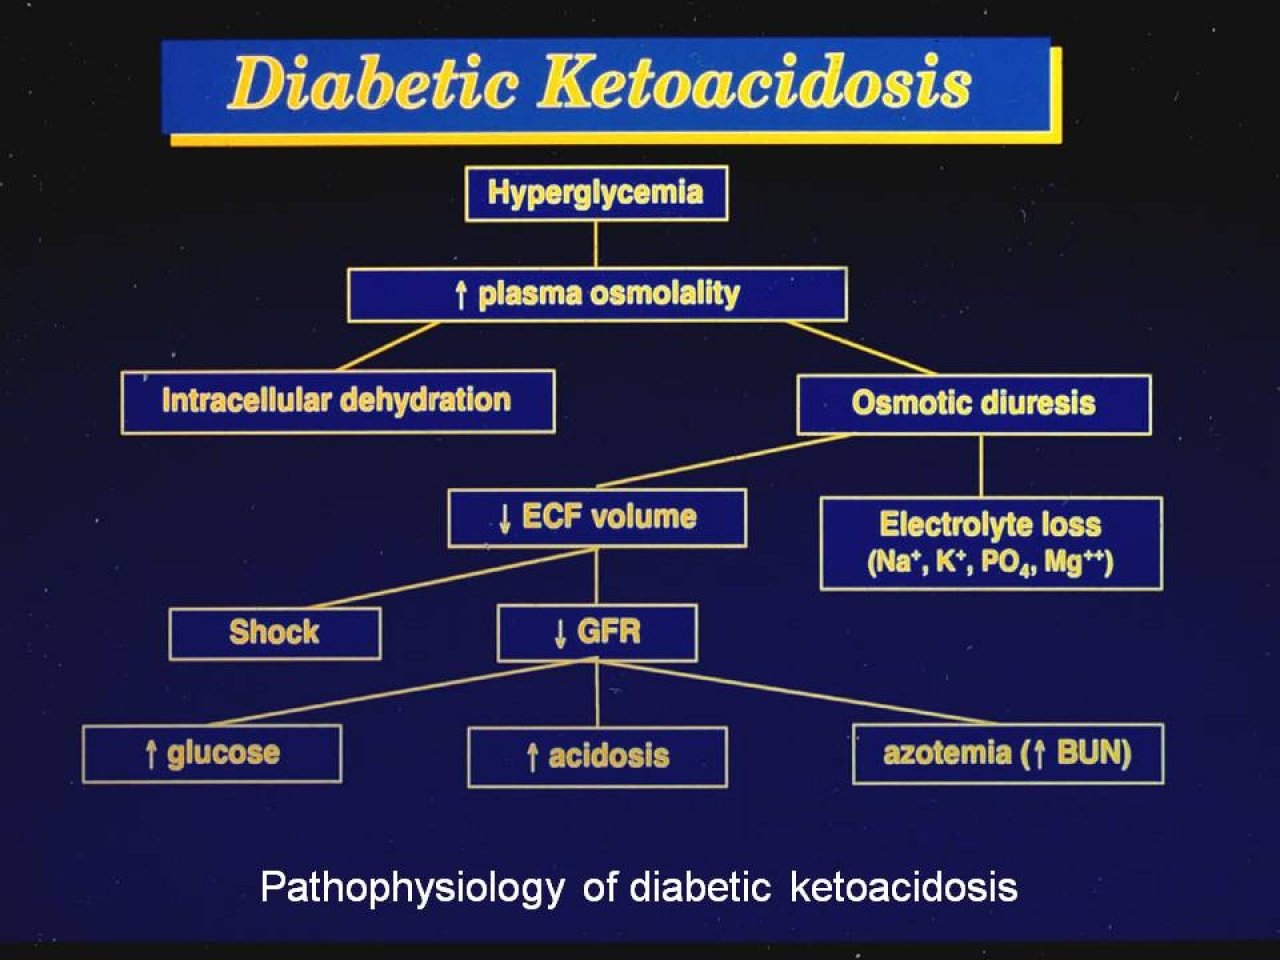 Endocrinologia dieta cetosis en acidosis diabetica